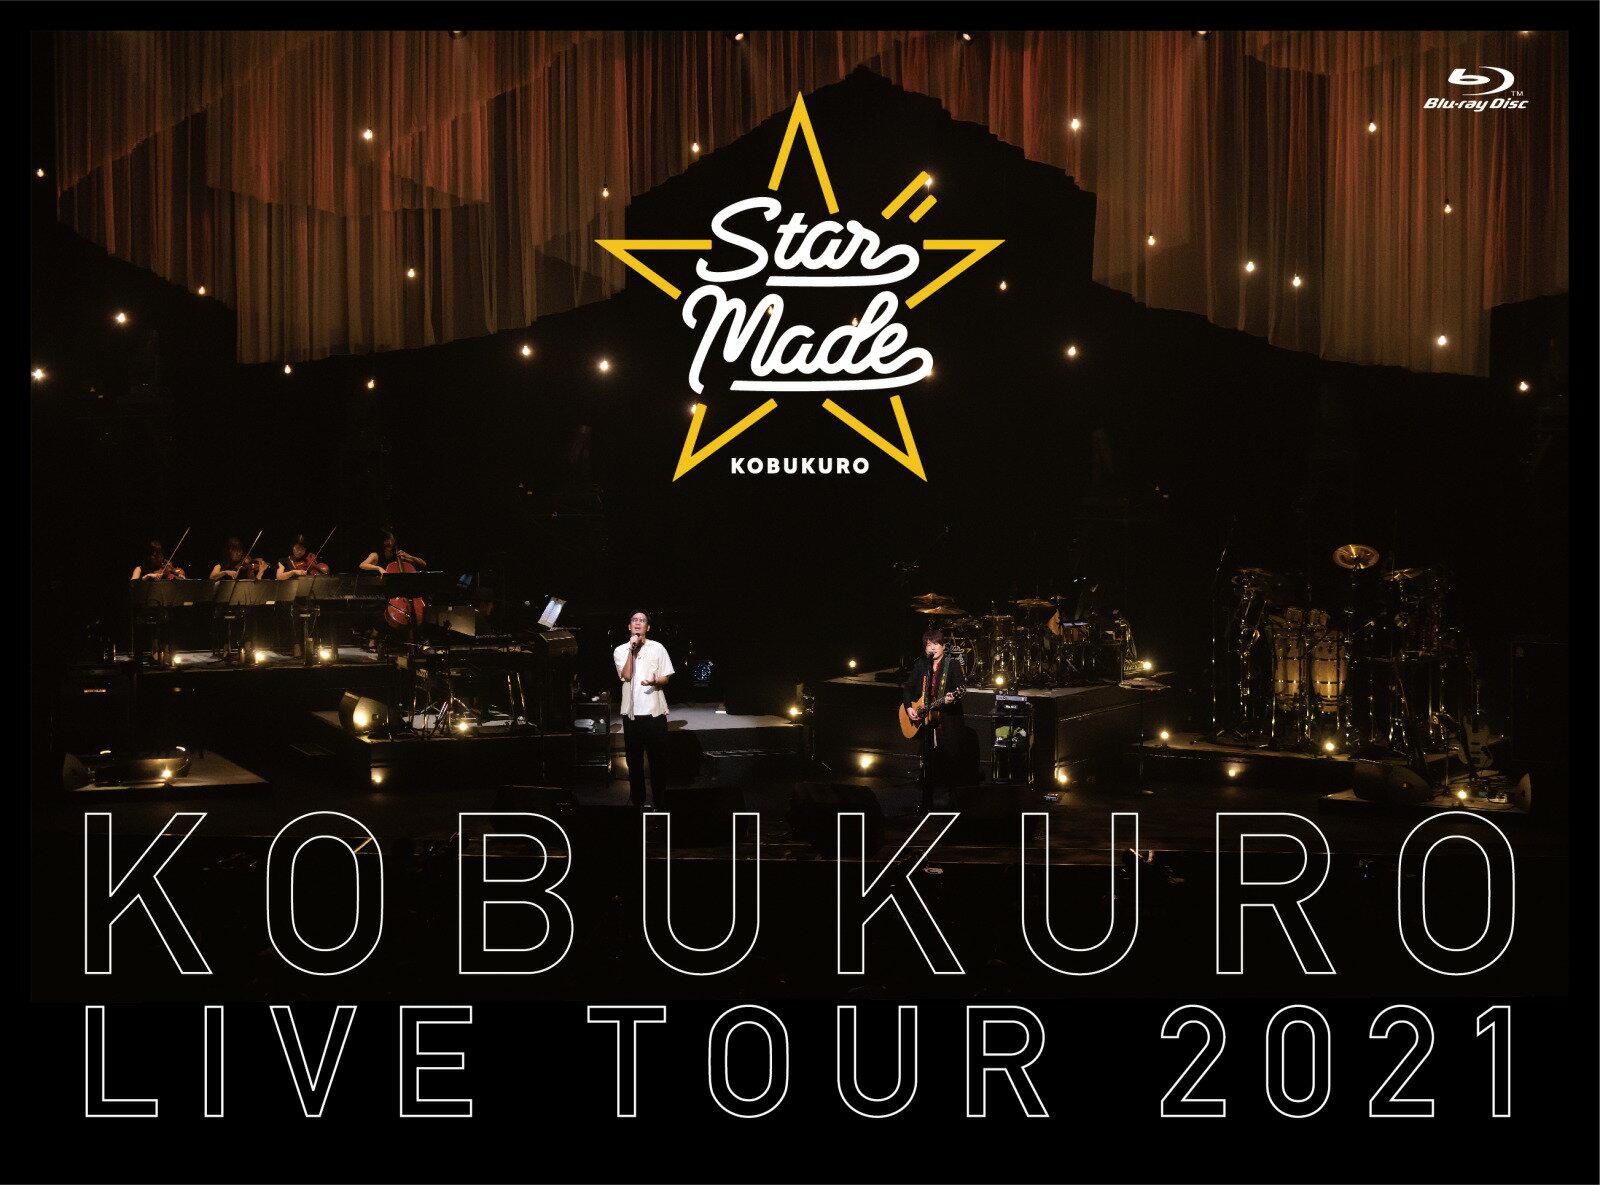 KOBUKURO LIVE TOUR 2021 “Star Made” at 東京ガーデンシアター(BD 初回限定盤)【Blu-ray】